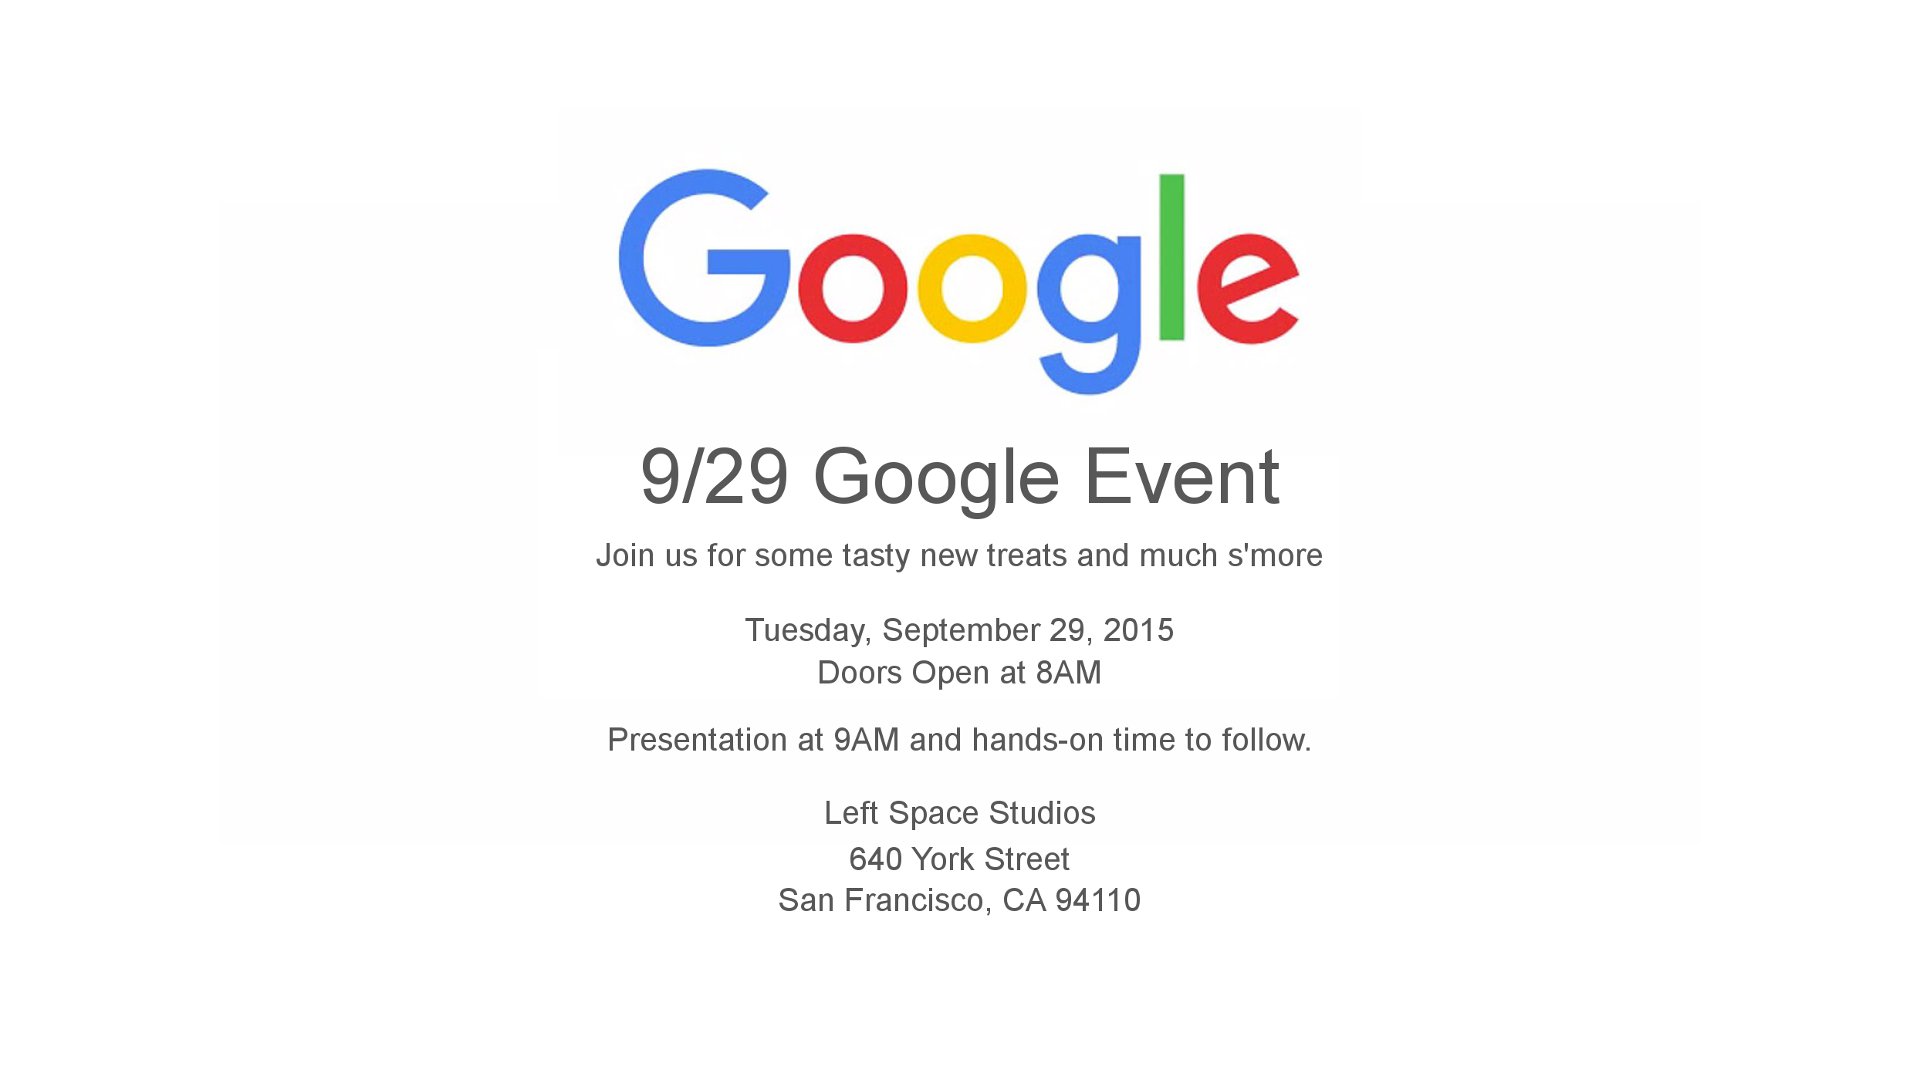 Google - September 29 Event Invite